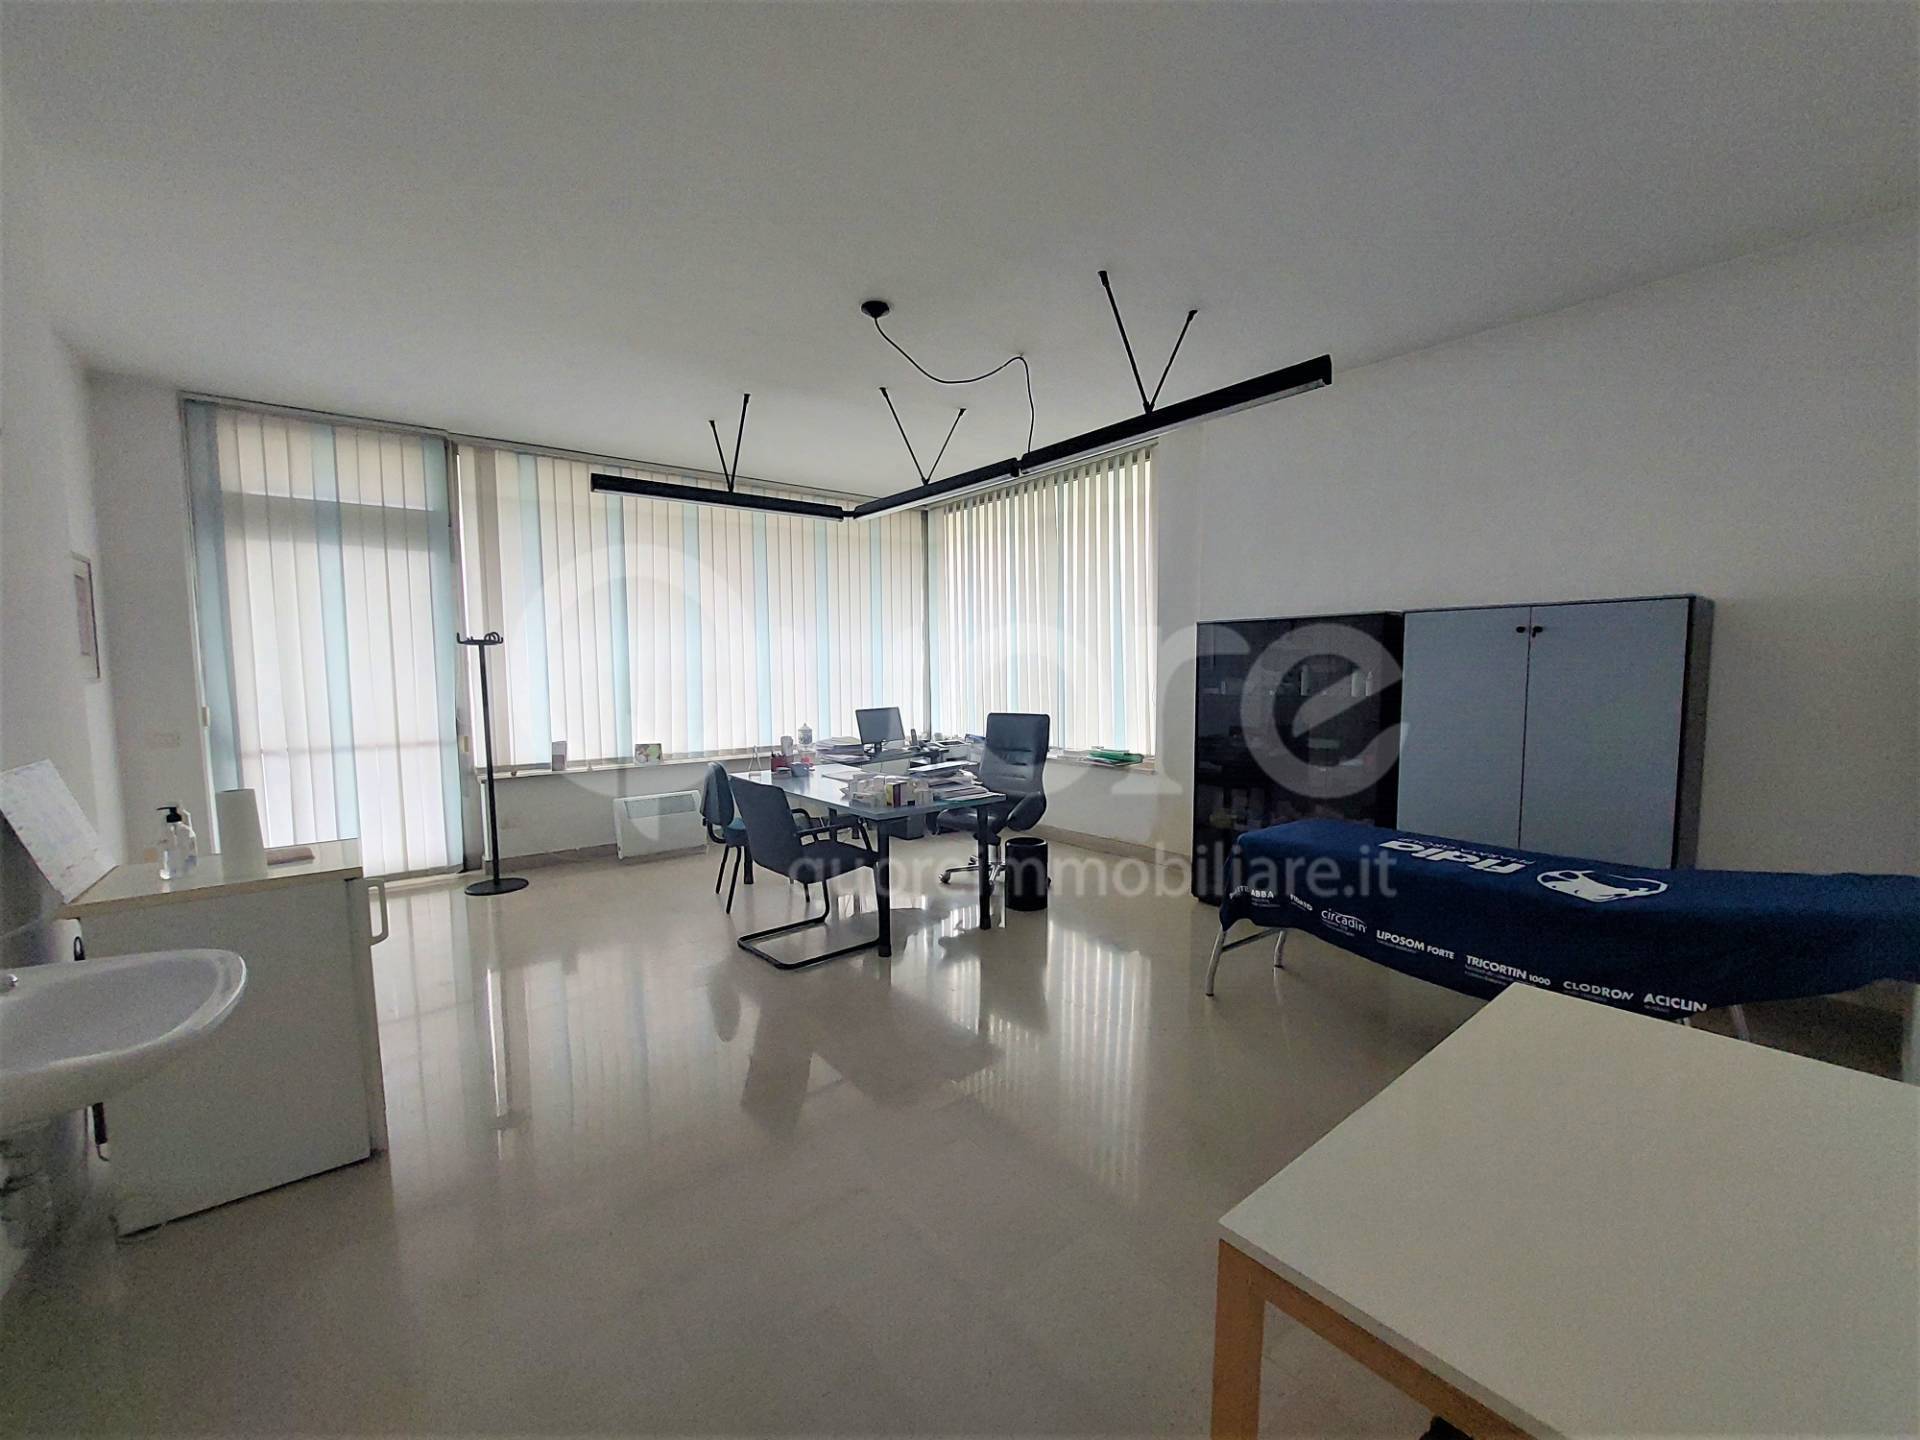 Ufficio / Studio in affitto a Udine, 9999 locali, zona Zona: Cussignacco, prezzo € 700 | CambioCasa.it